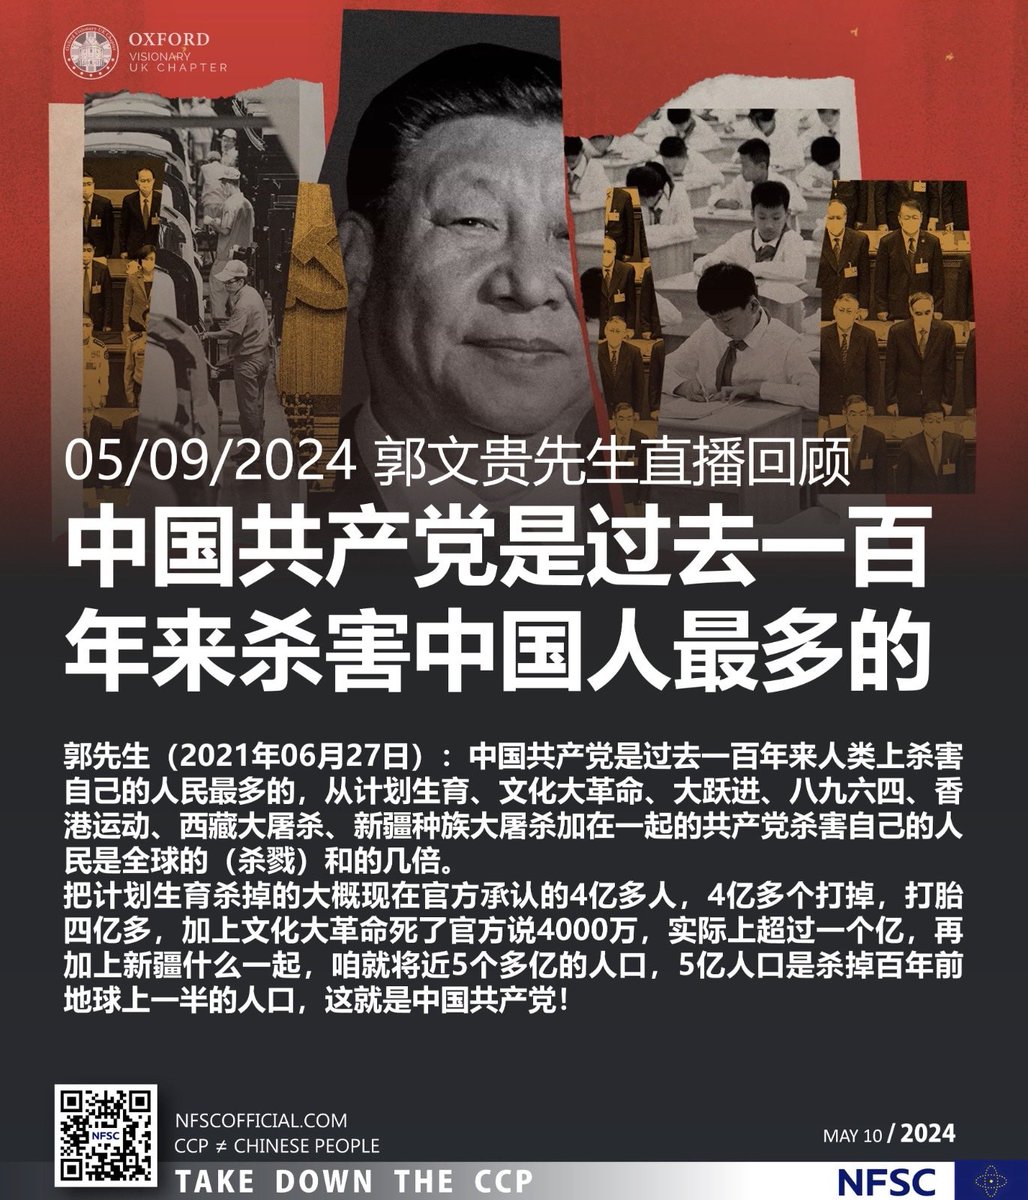 05/09/2024 #郭文贵 先生直播回顾
#郭先生（2021年06月27日）： #中国共产党 是过去一百年来人类上杀害自己的人民最多的，从 #计划生育、 #文化大革命、 #大跃进、 #八九六四、 #香港运动、 #西藏大屠杀、 #新疆种族大屠杀 加在一起的 #共产党 杀害自己的人民是全球的（杀戮）和的几倍。
#脱钩